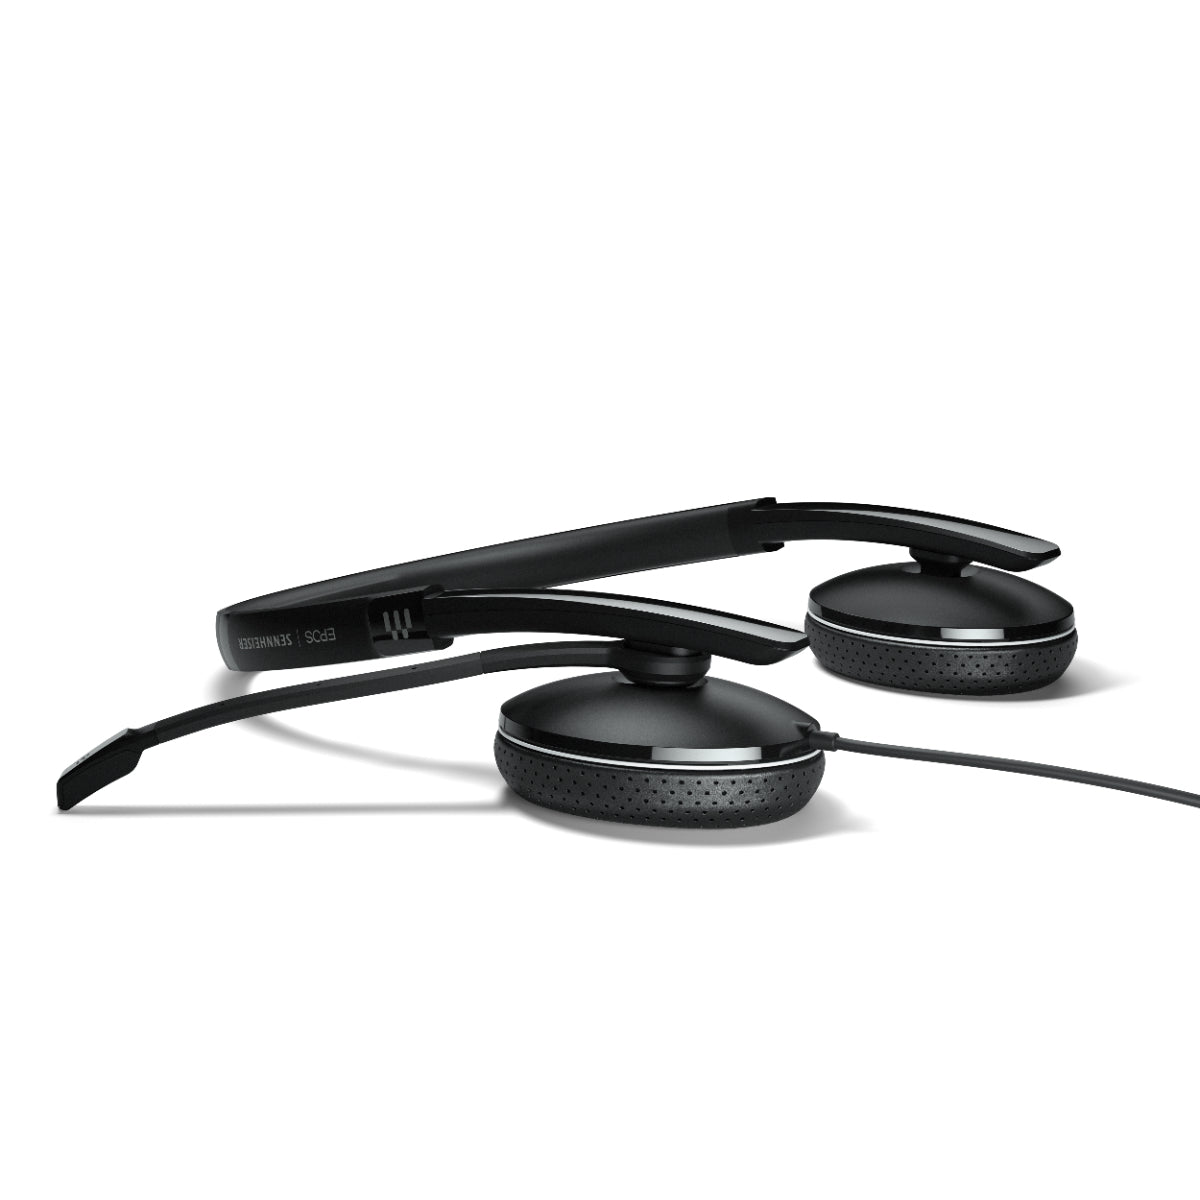 EPOS ADAPT 165T USB II Binaural Office Headset, Black, 2.3m Cable, 3.5mm Jack Plug